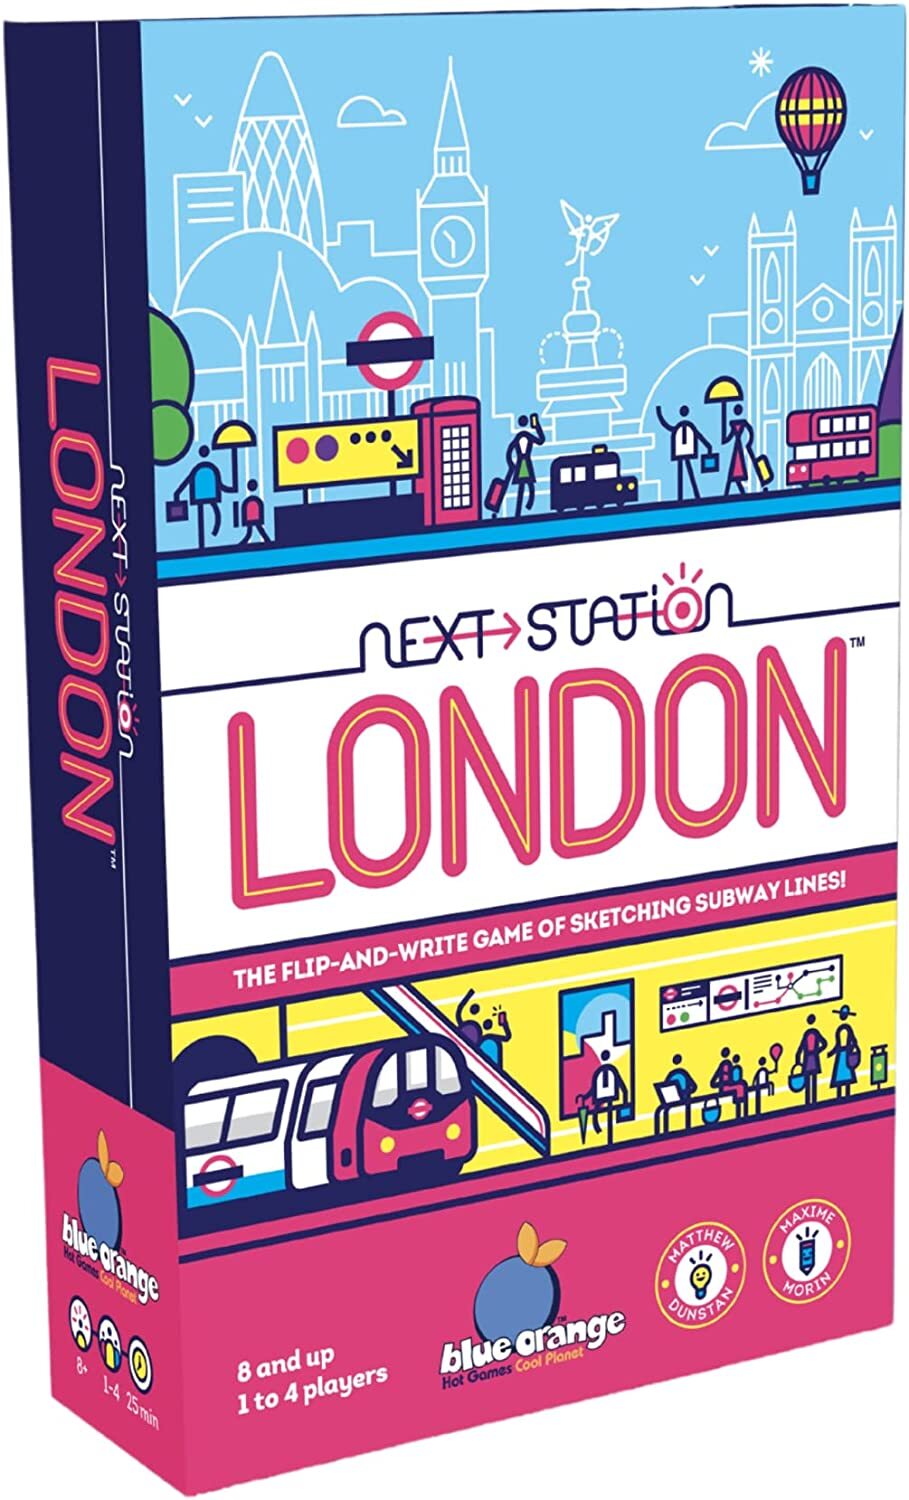 Next Station London